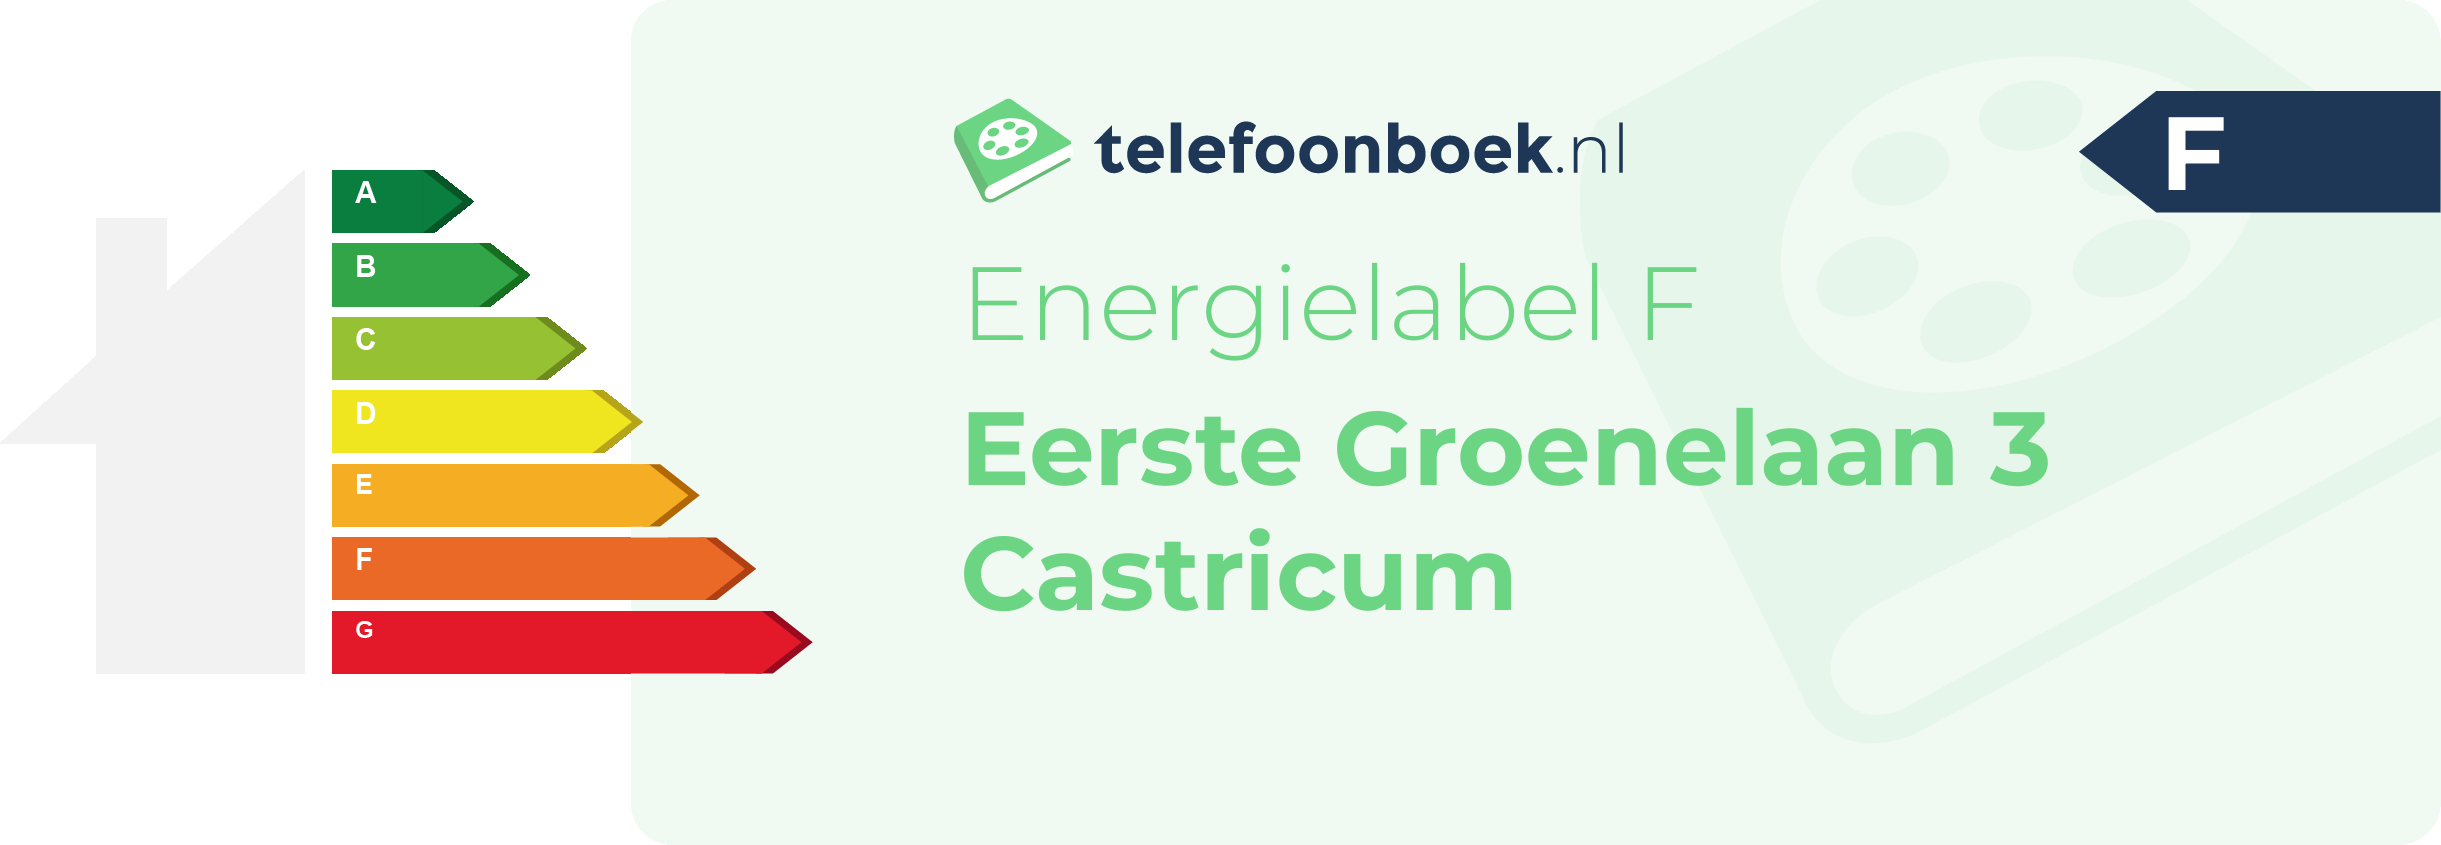 Energielabel Eerste Groenelaan 3 Castricum